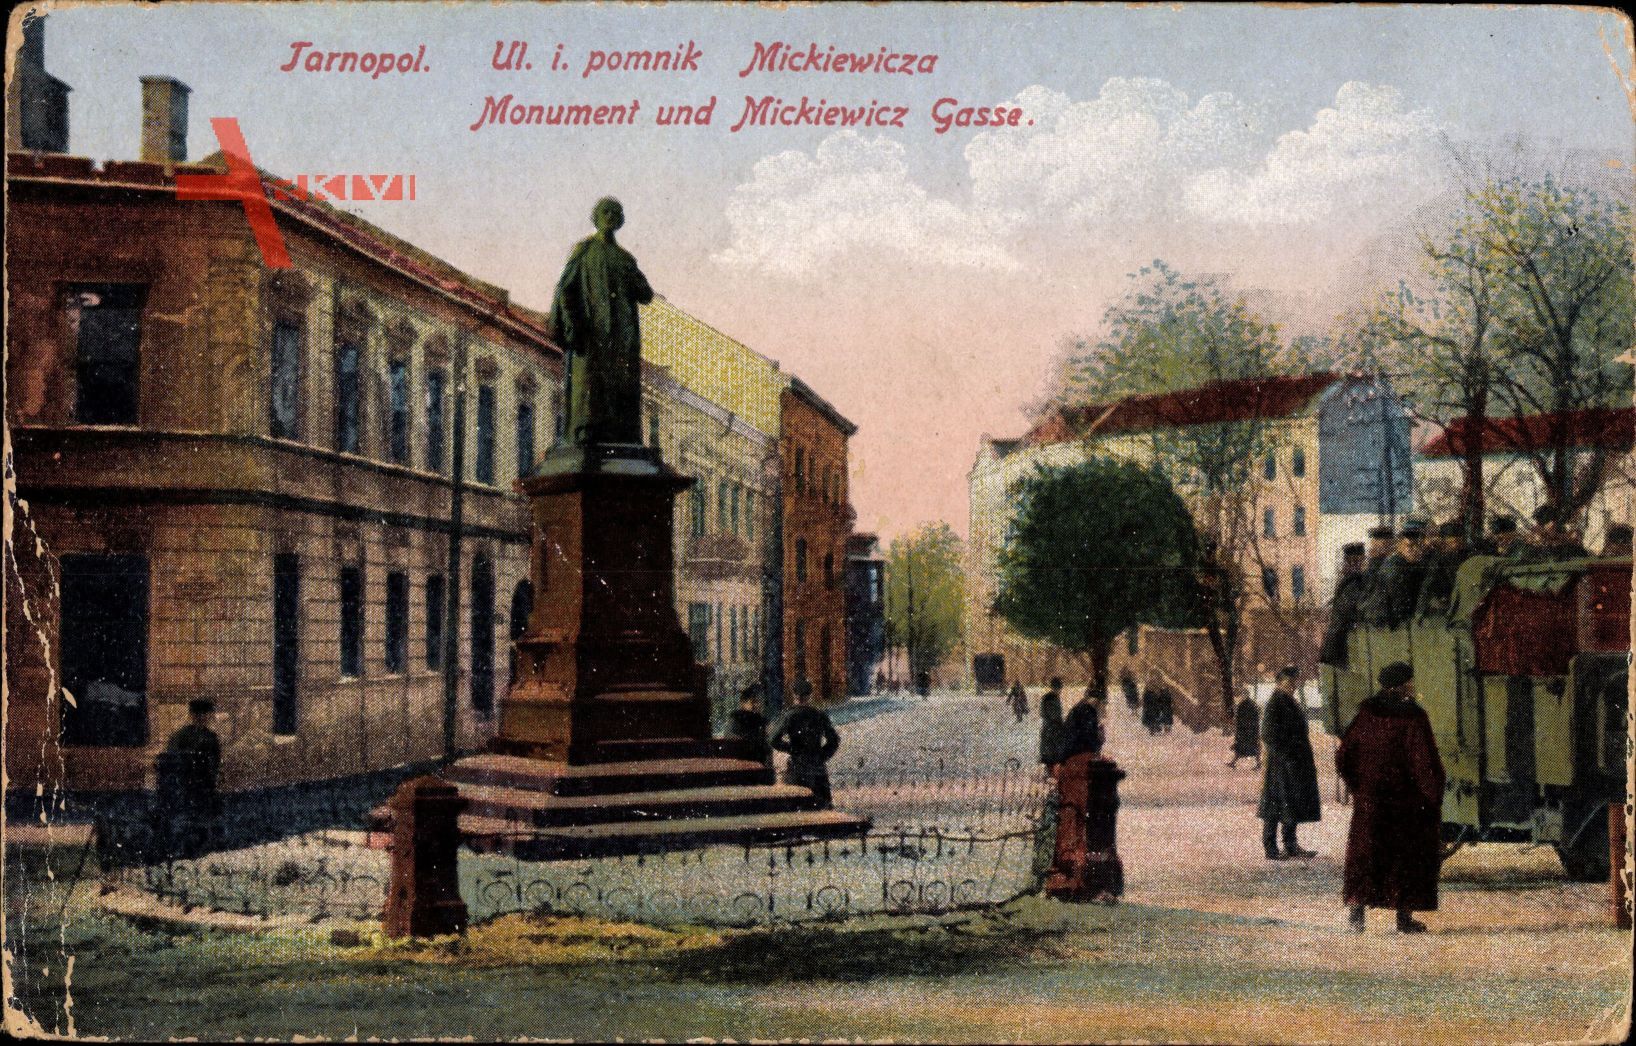 Tarnopol Ukraine, Monument und Mickiewicz Gasse, Denkmal, Soldaten